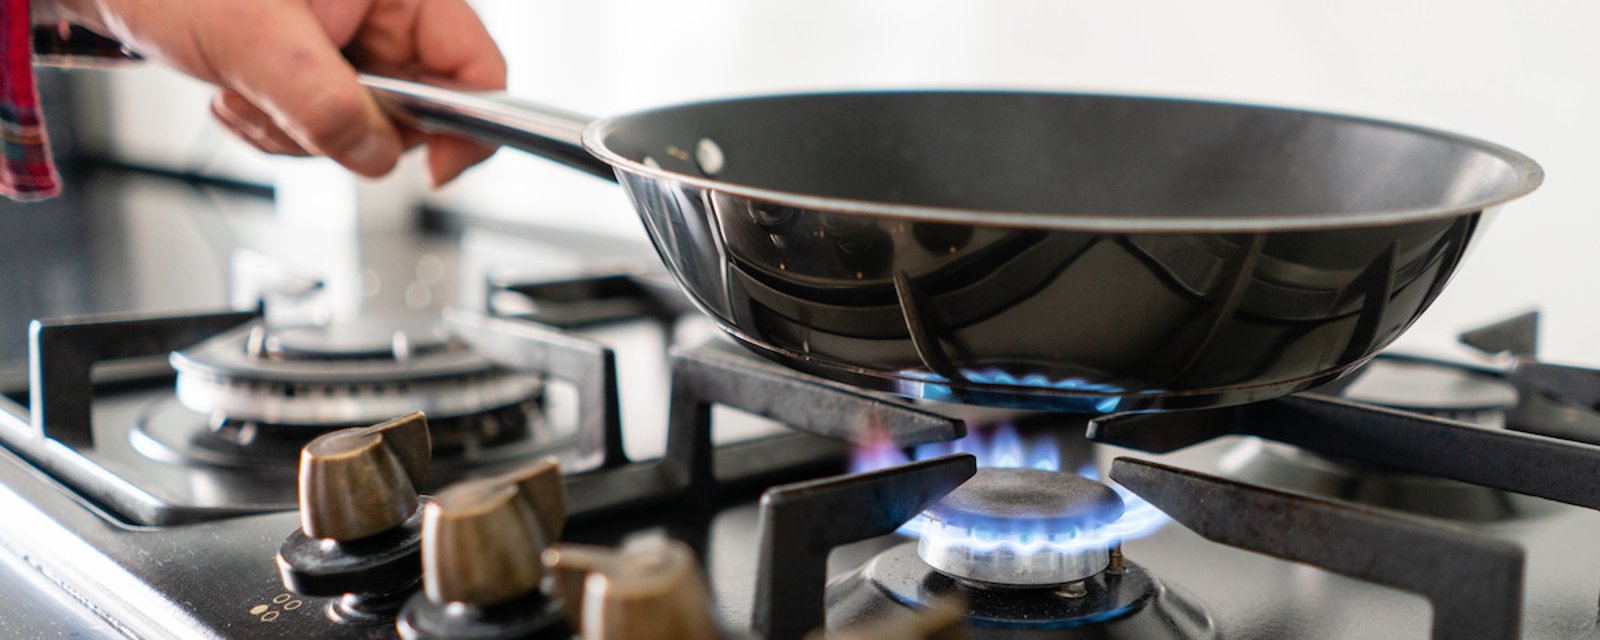 Les cuisinières au gaz sont dangereuses pour la santé